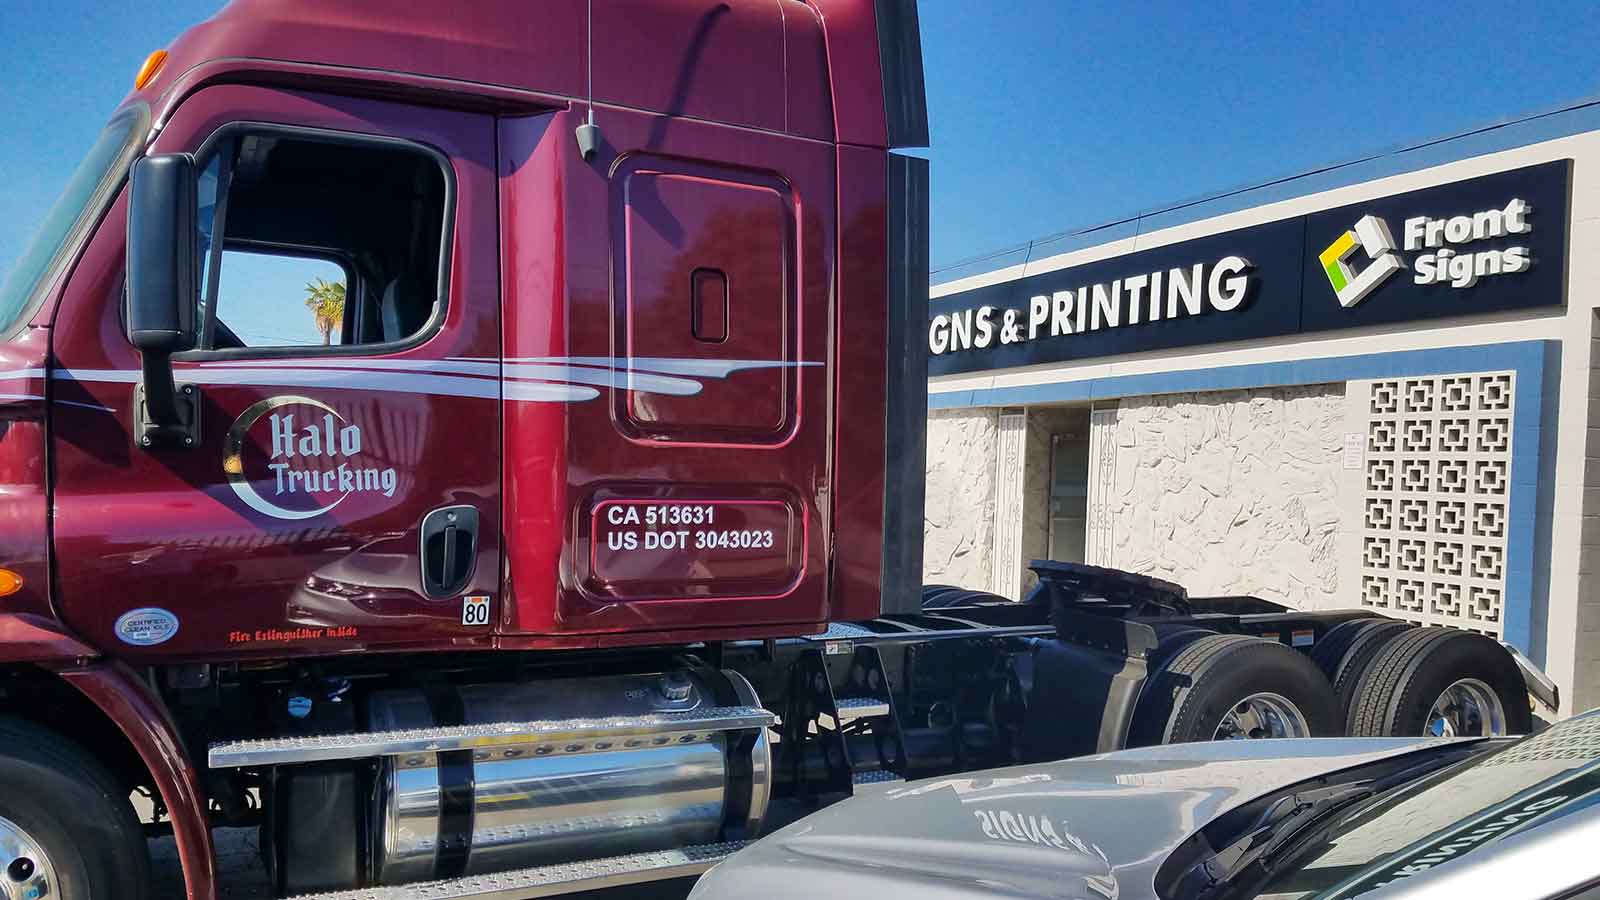 halo trucking vehicle wrap